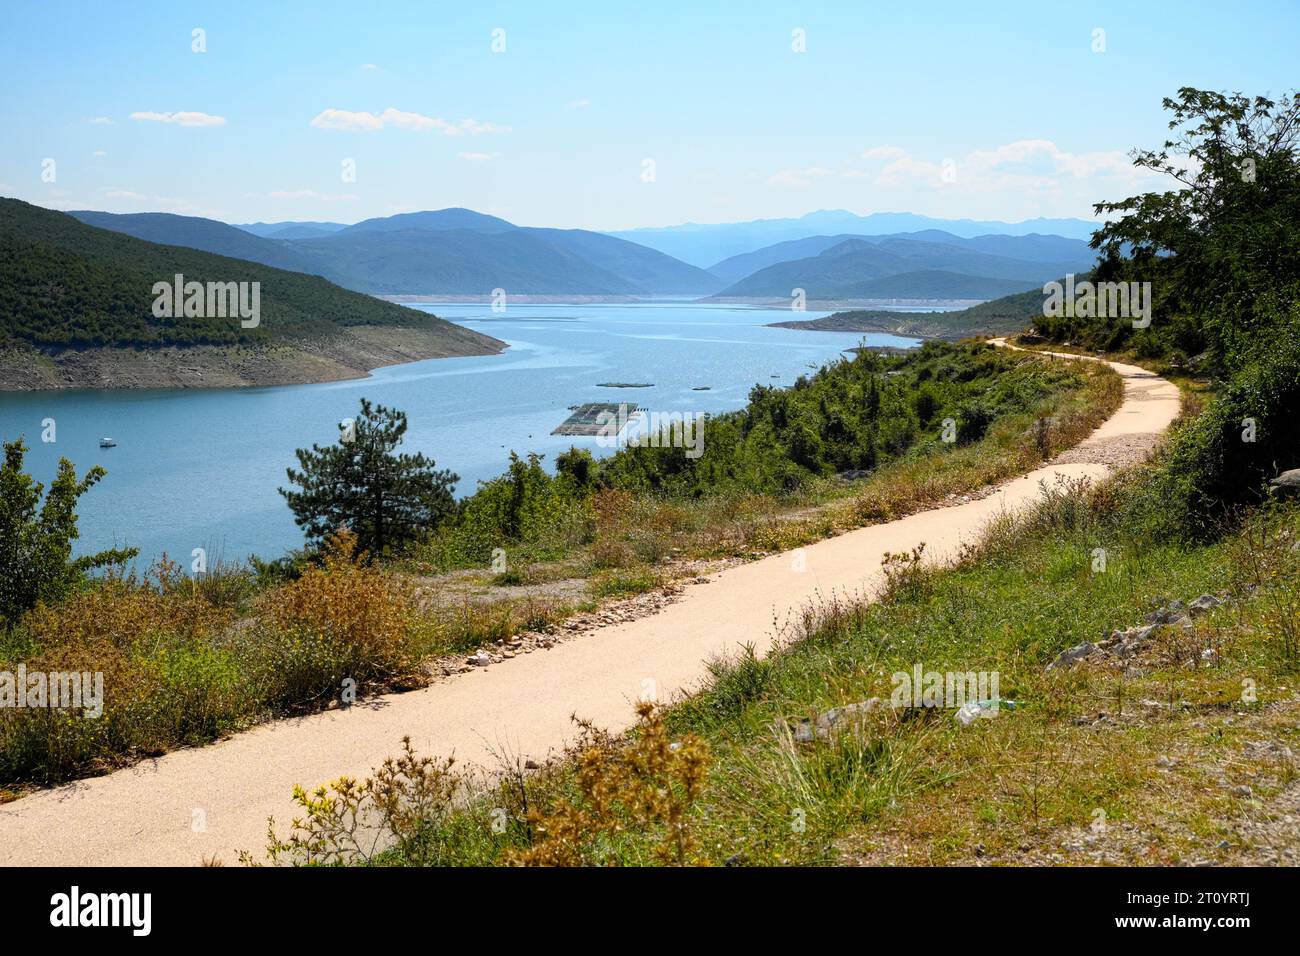 Sentiero tortuoso lungo il lago Bileca in Bosnia-Erzegovina Foto Stock